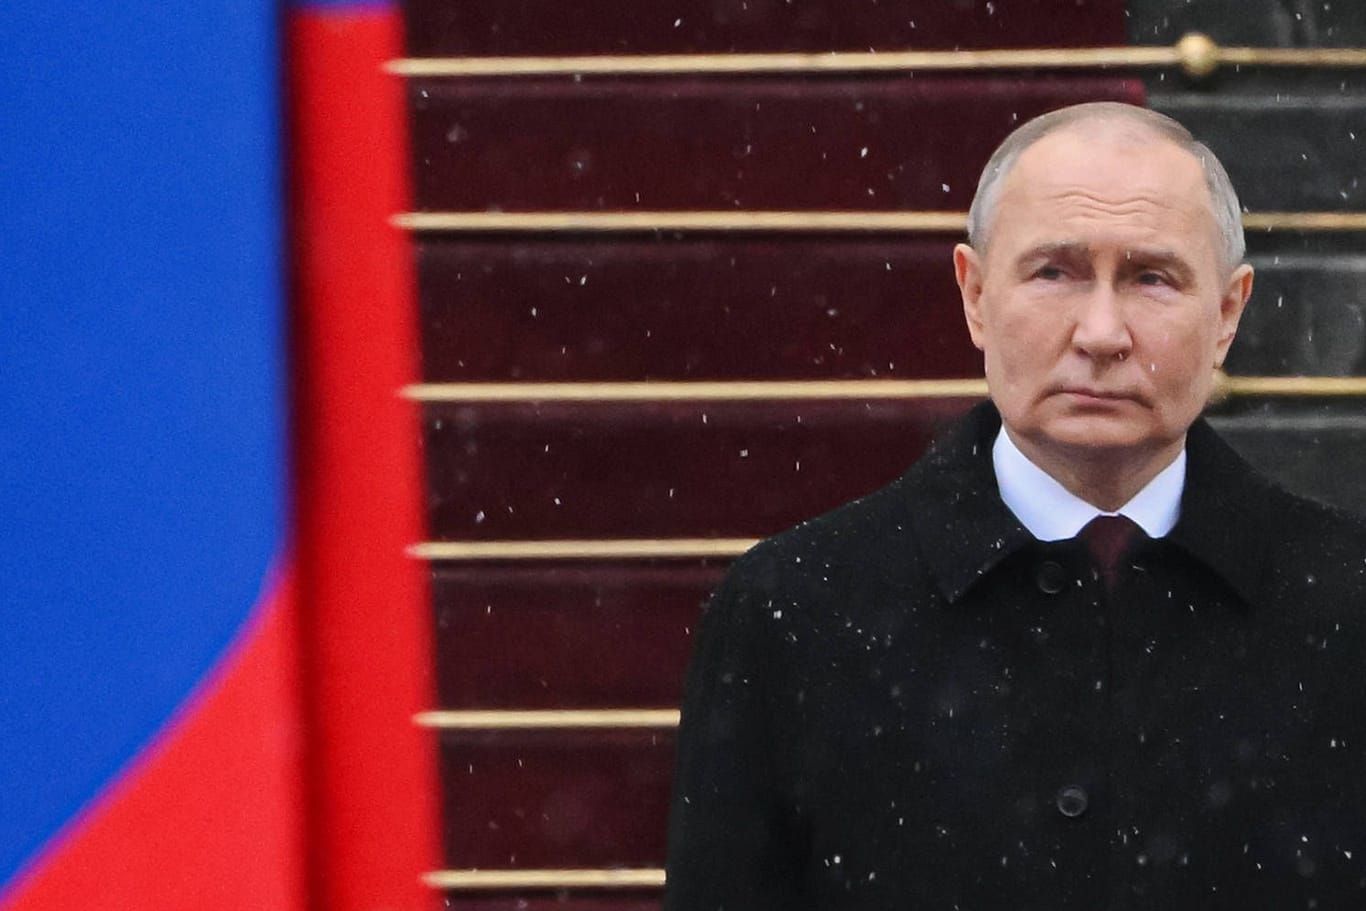 Diktator Putin bei seiner Inauguration nach seiner mutmaßlich manipulierten Wiederwahl.